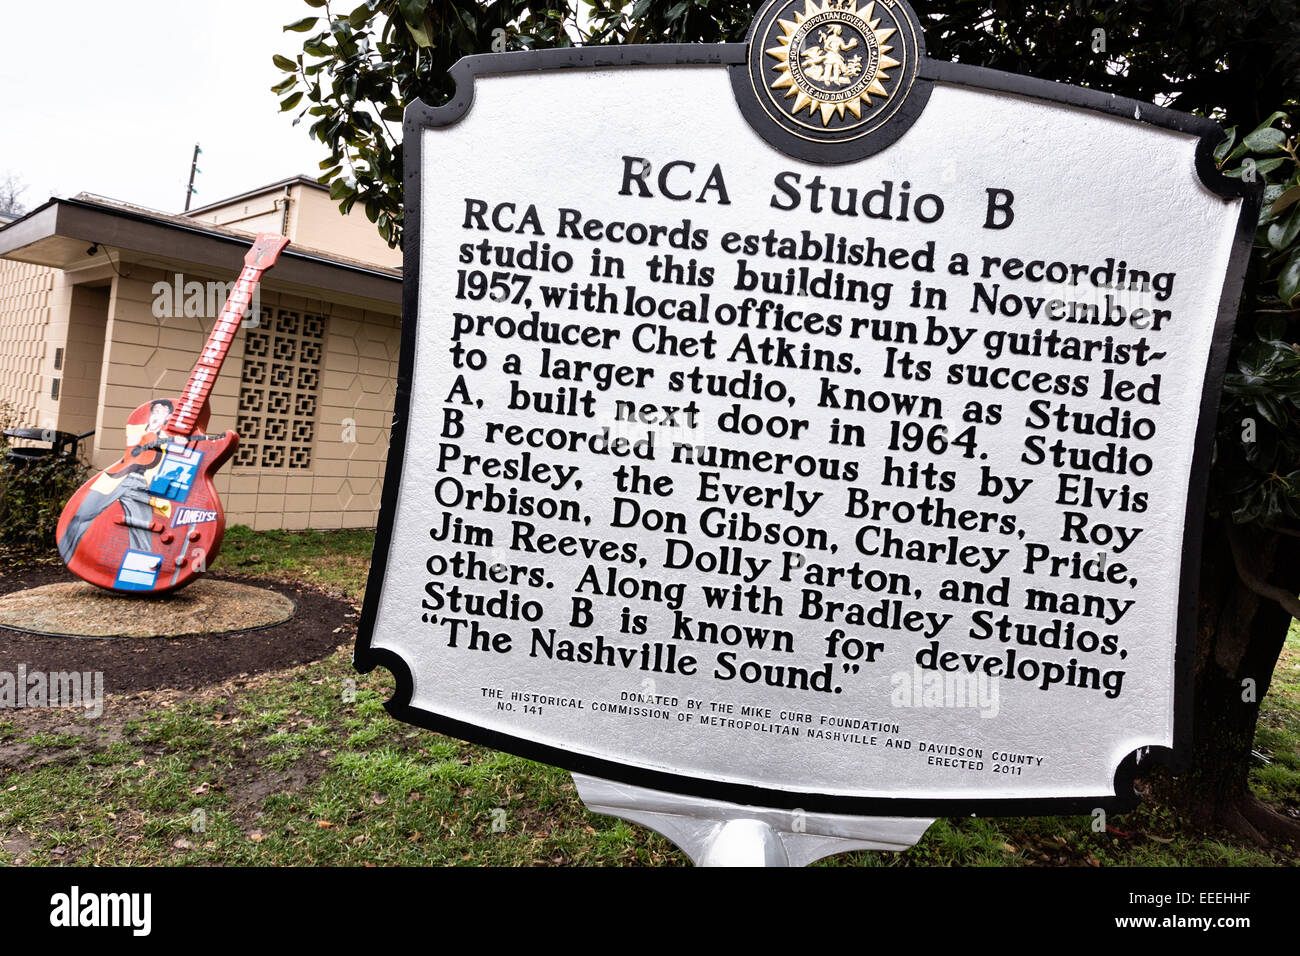 Legendären Aufnahmestudio RCA Studio B in Nashville, TN. Stockfoto